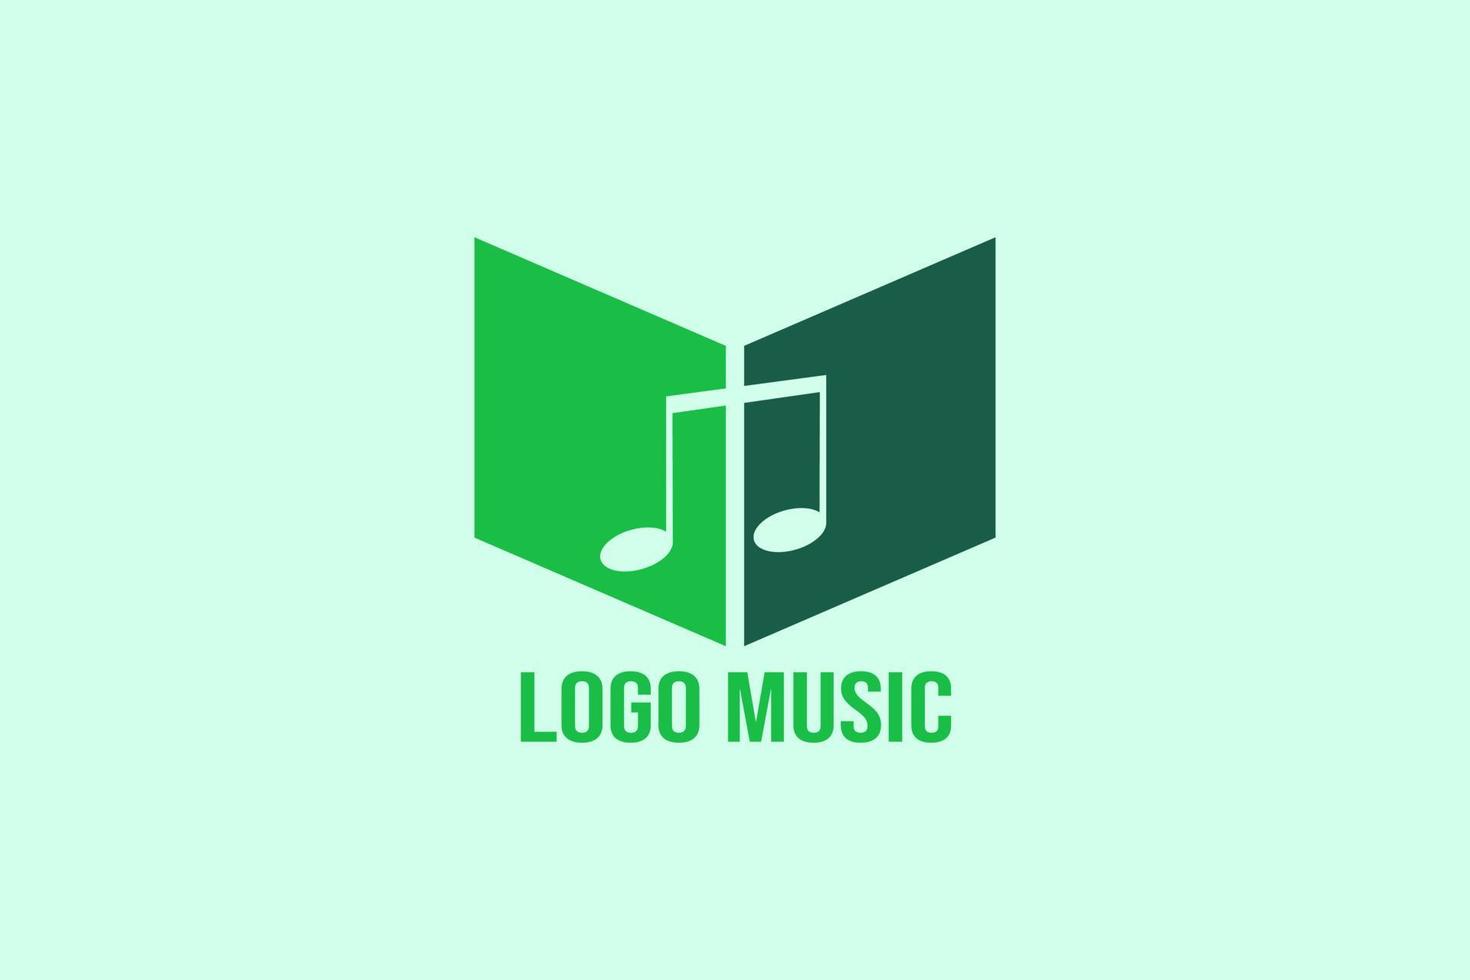 Logo music design vector